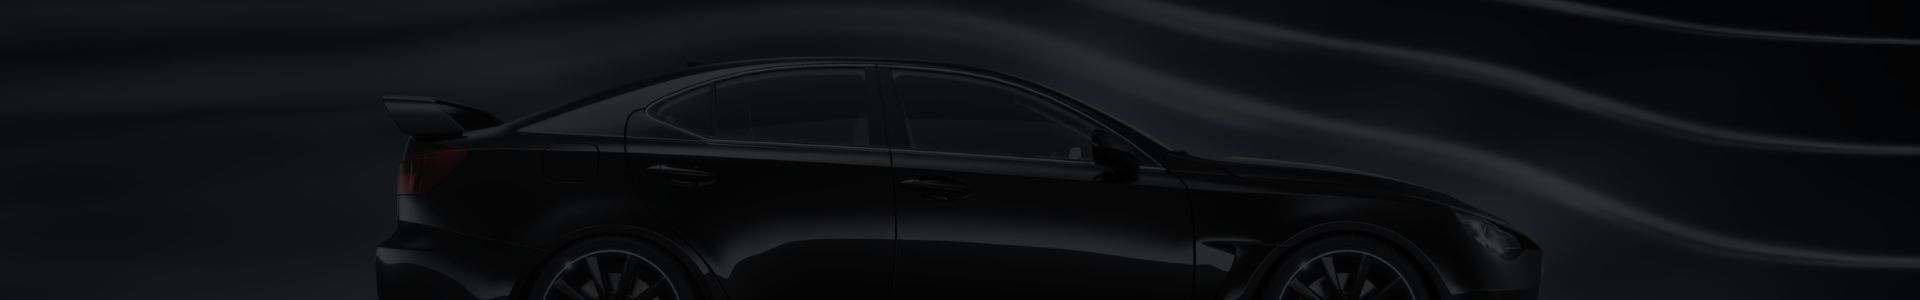 czarny samochód stojący bokiem